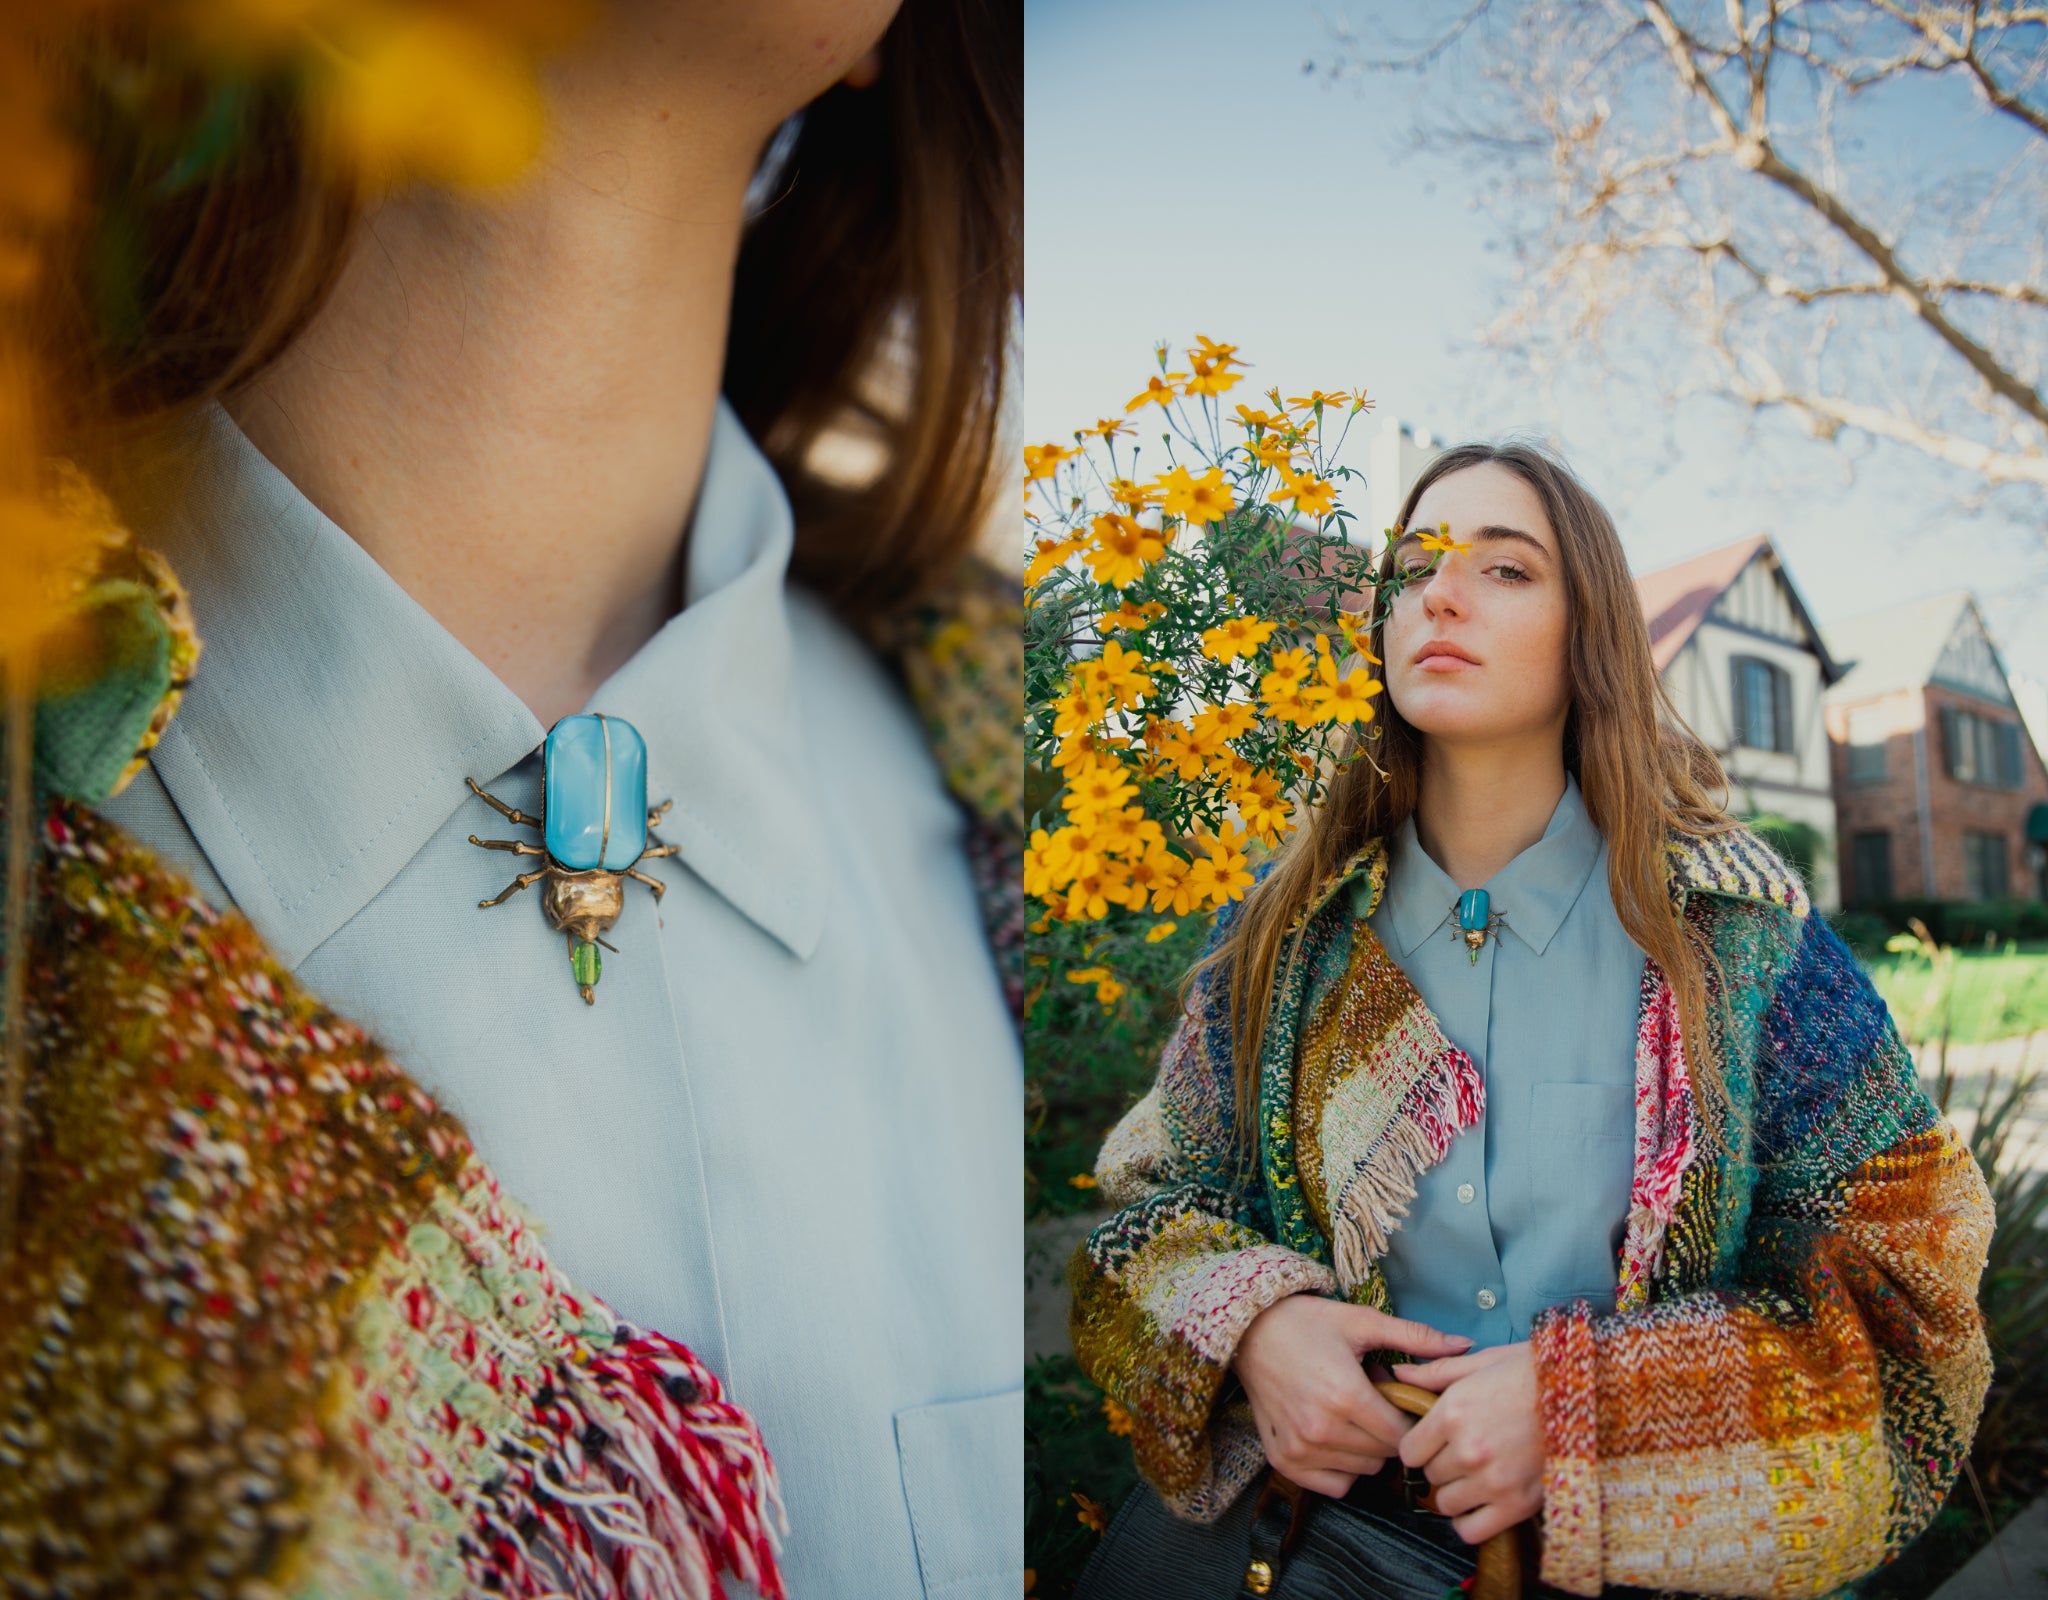 Girl in Rainbow JC de Castelbajac blanket coat & turquoise bug brooch w flowers